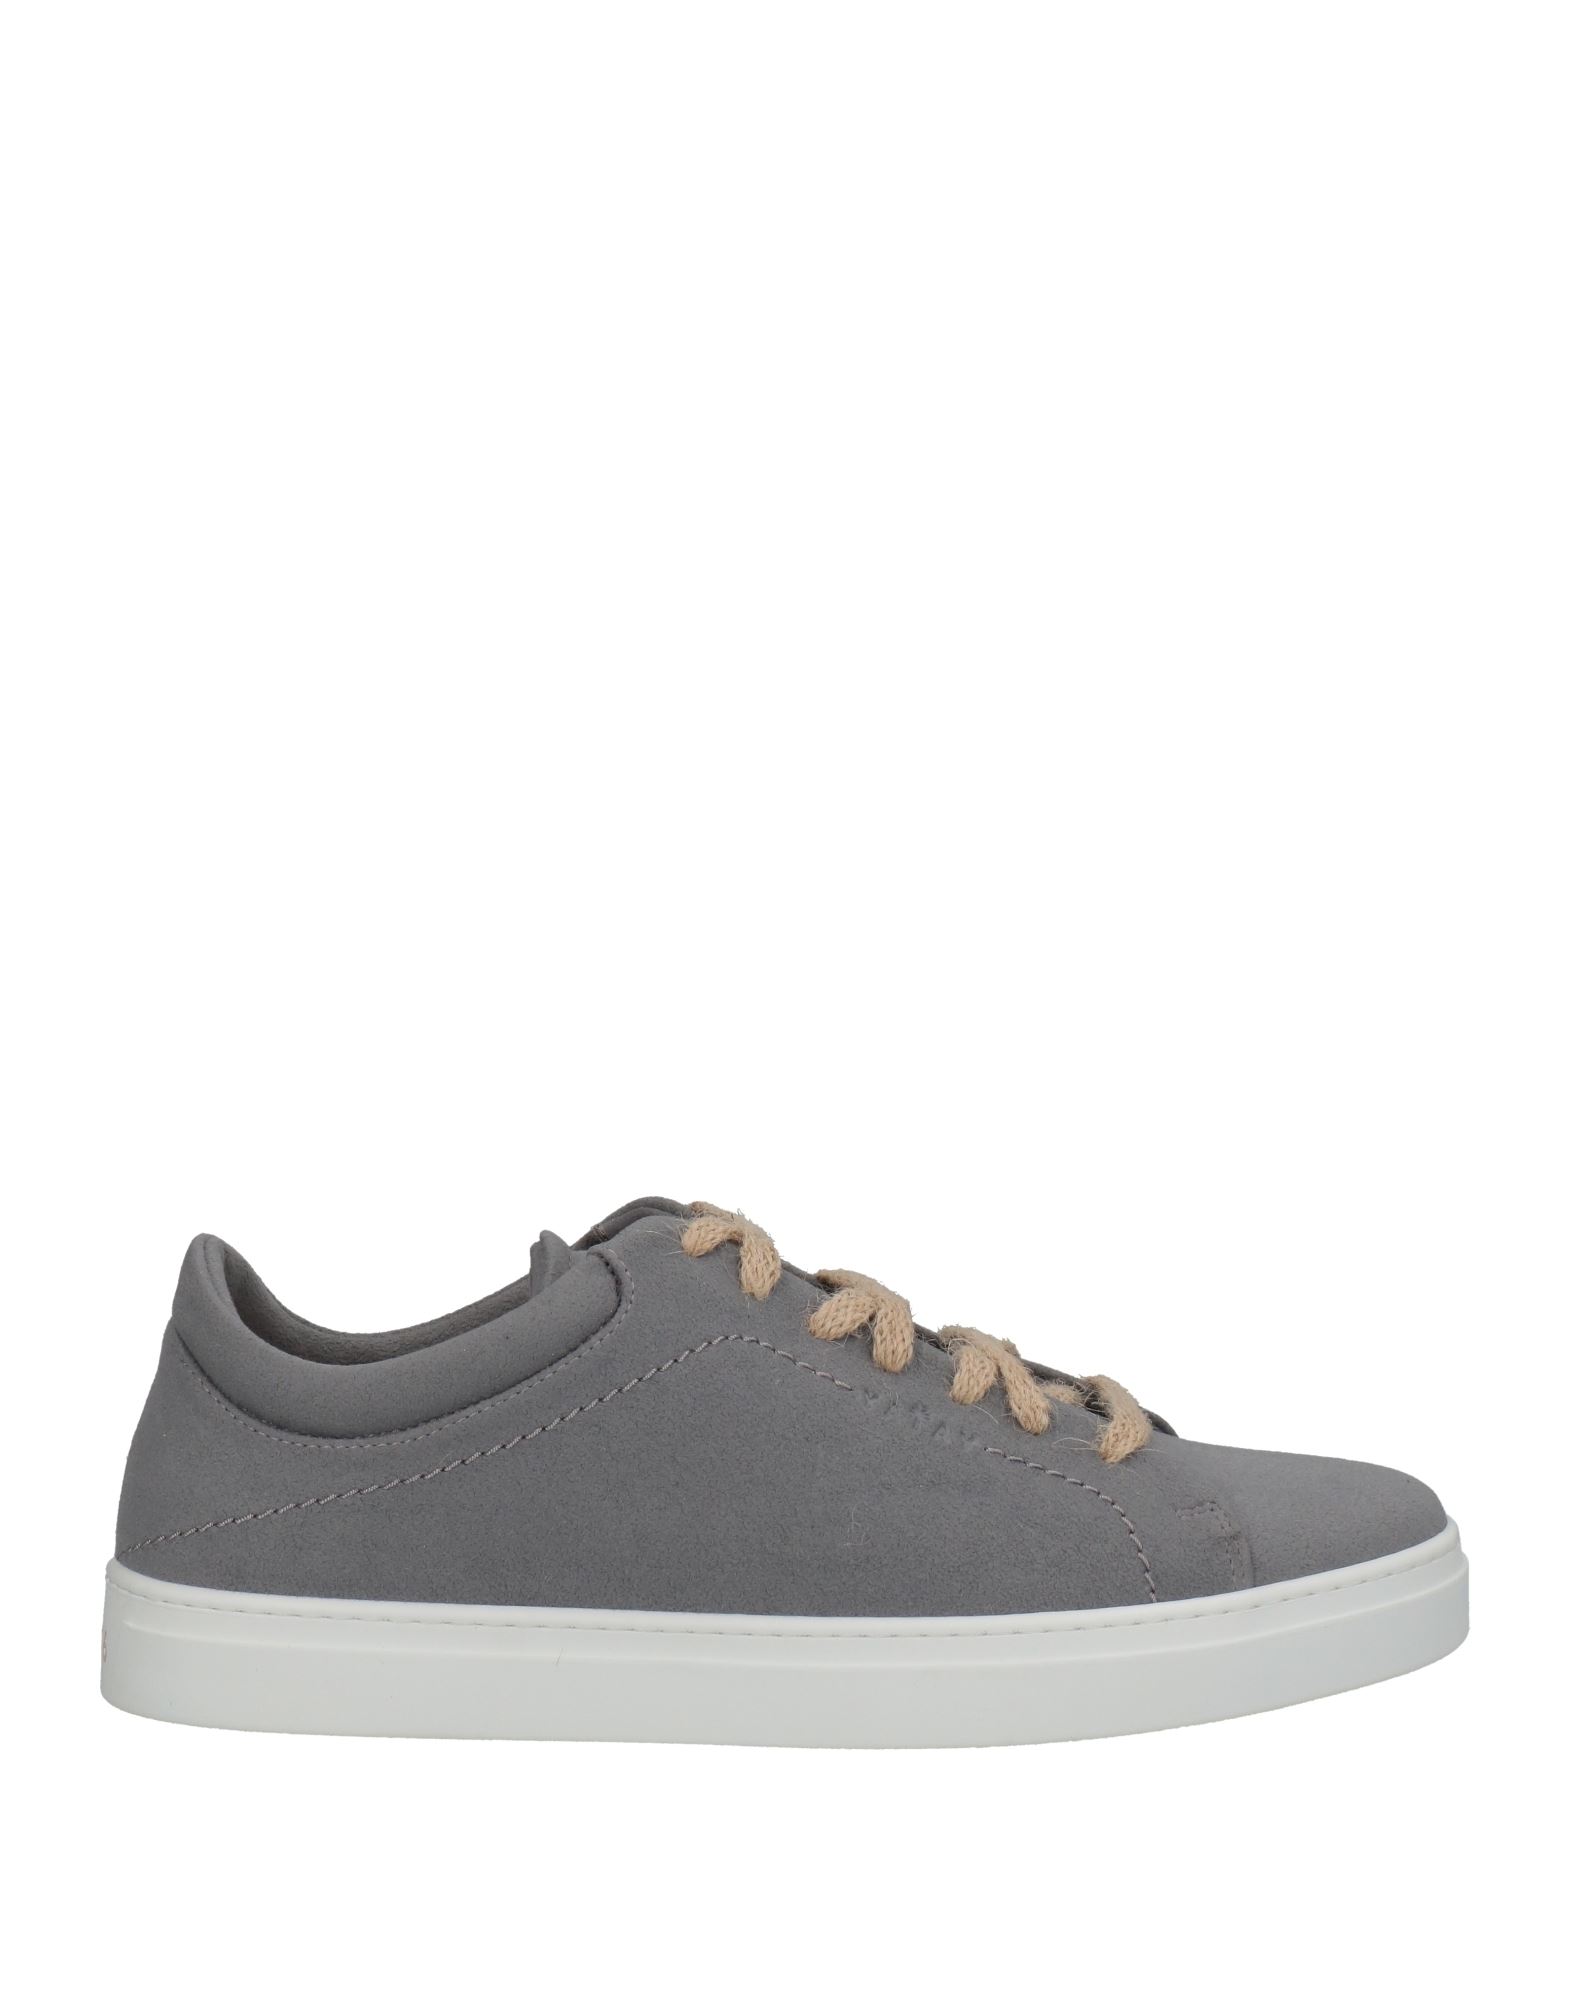 Shop Yatay Man Sneakers Grey Size 8 Textile Fibers